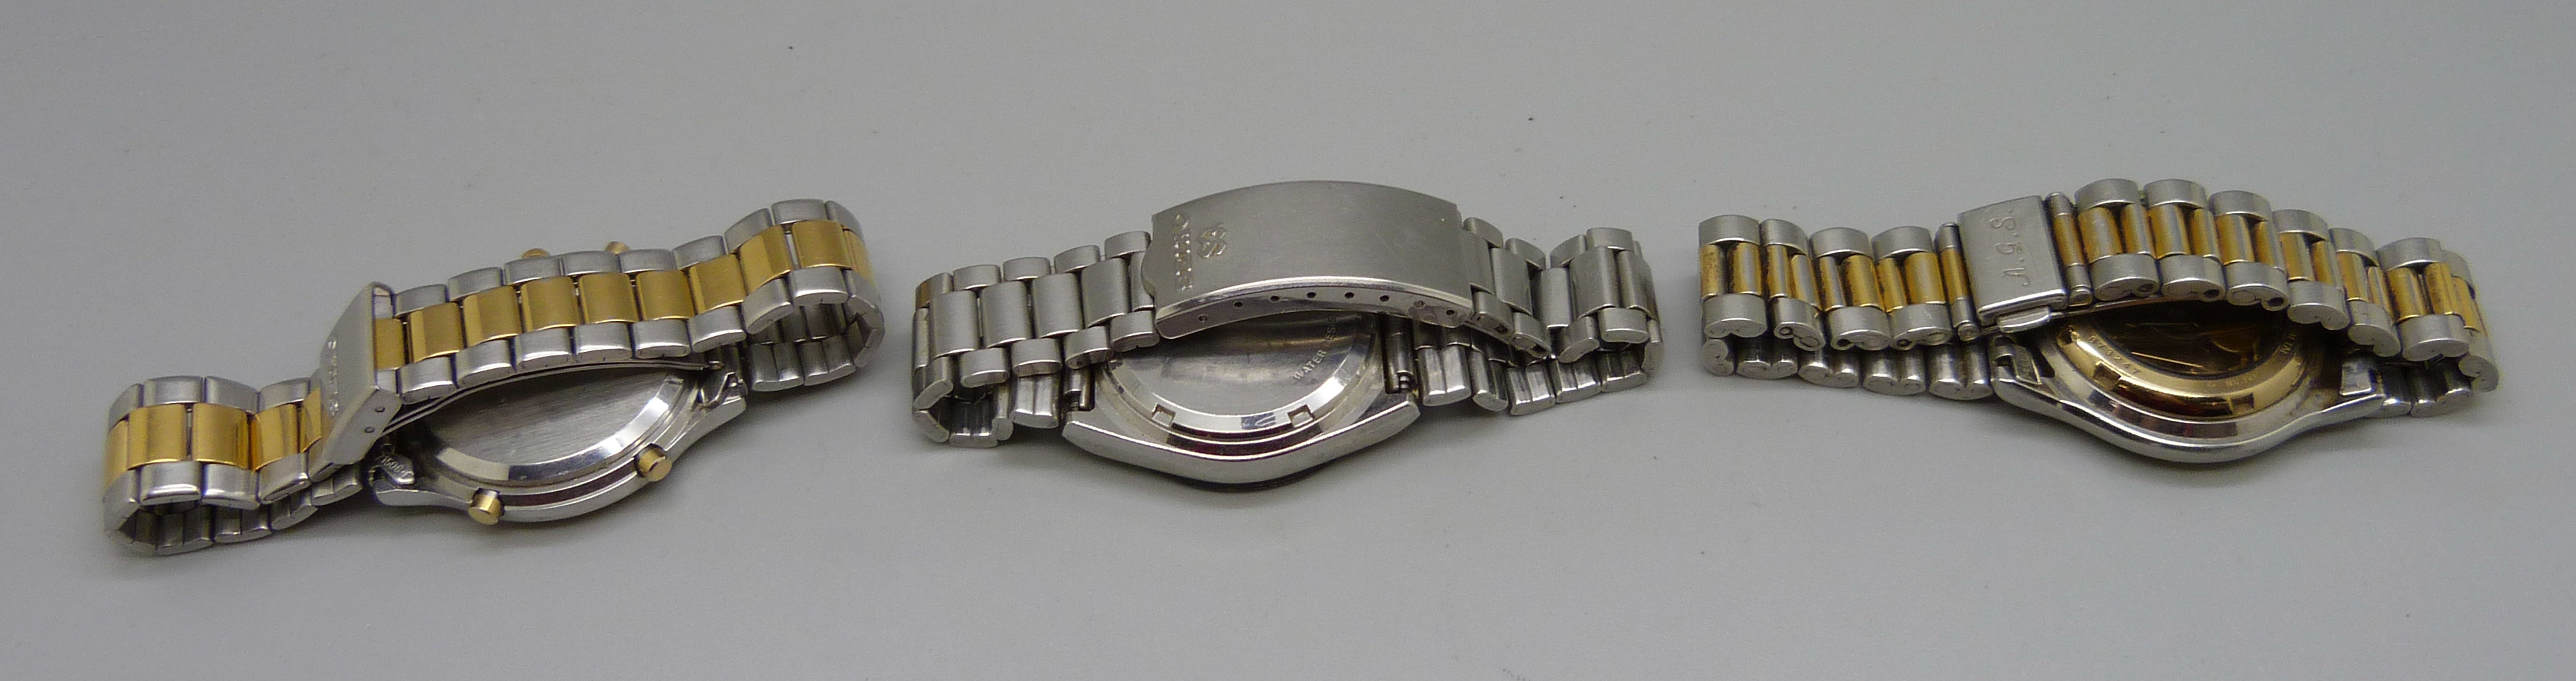 Three Seiko wristwatches - Image 2 of 2